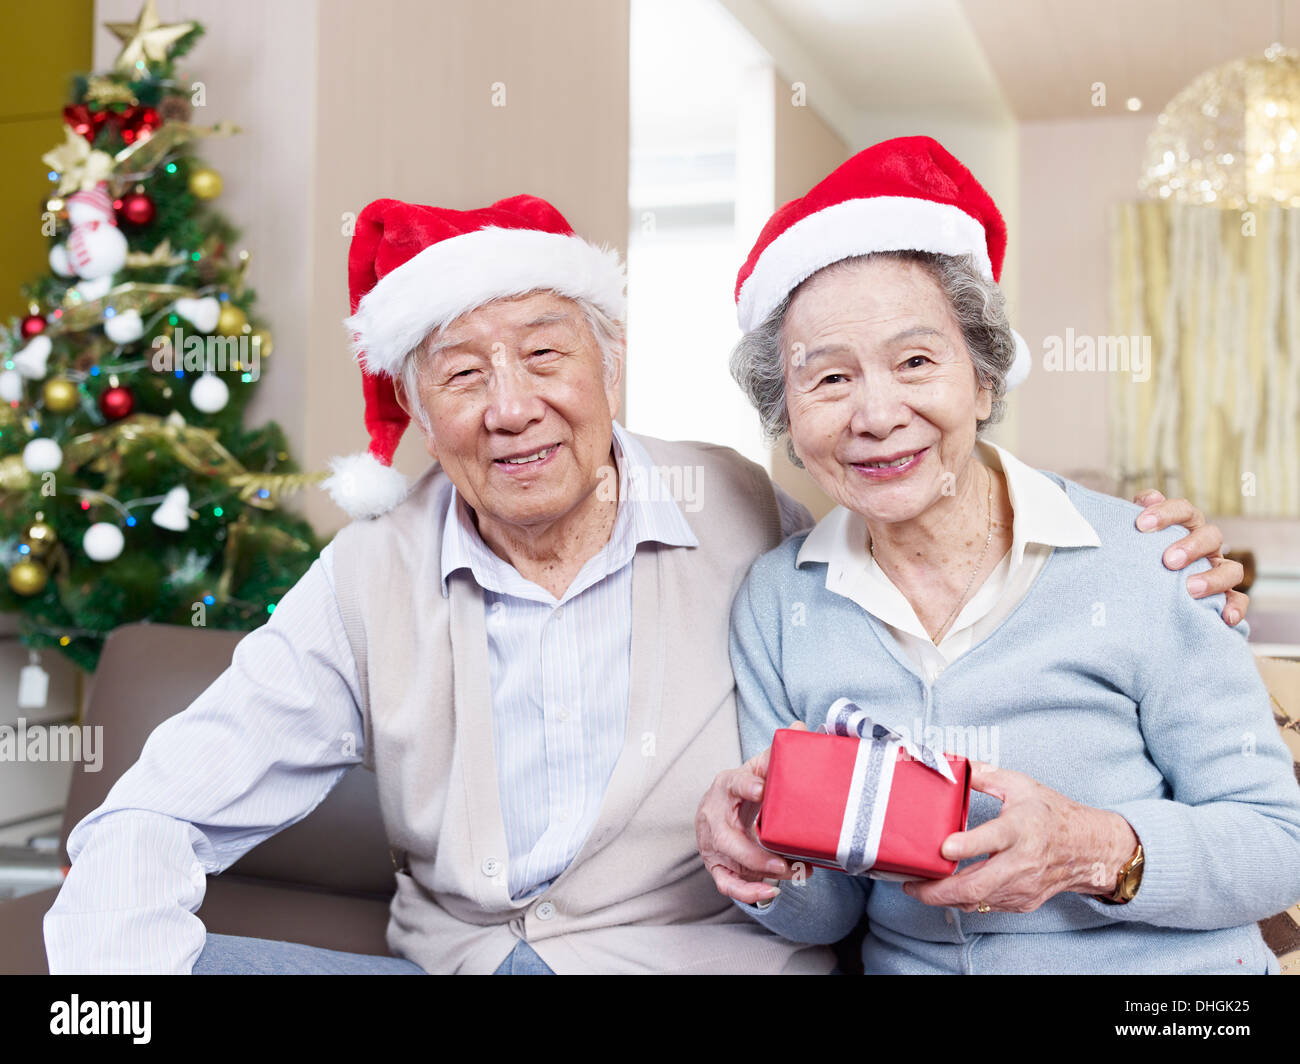 Porträt von einem asiatischen älteres Paar mit Weihnachtsmützen und Geschenke. Stockfoto